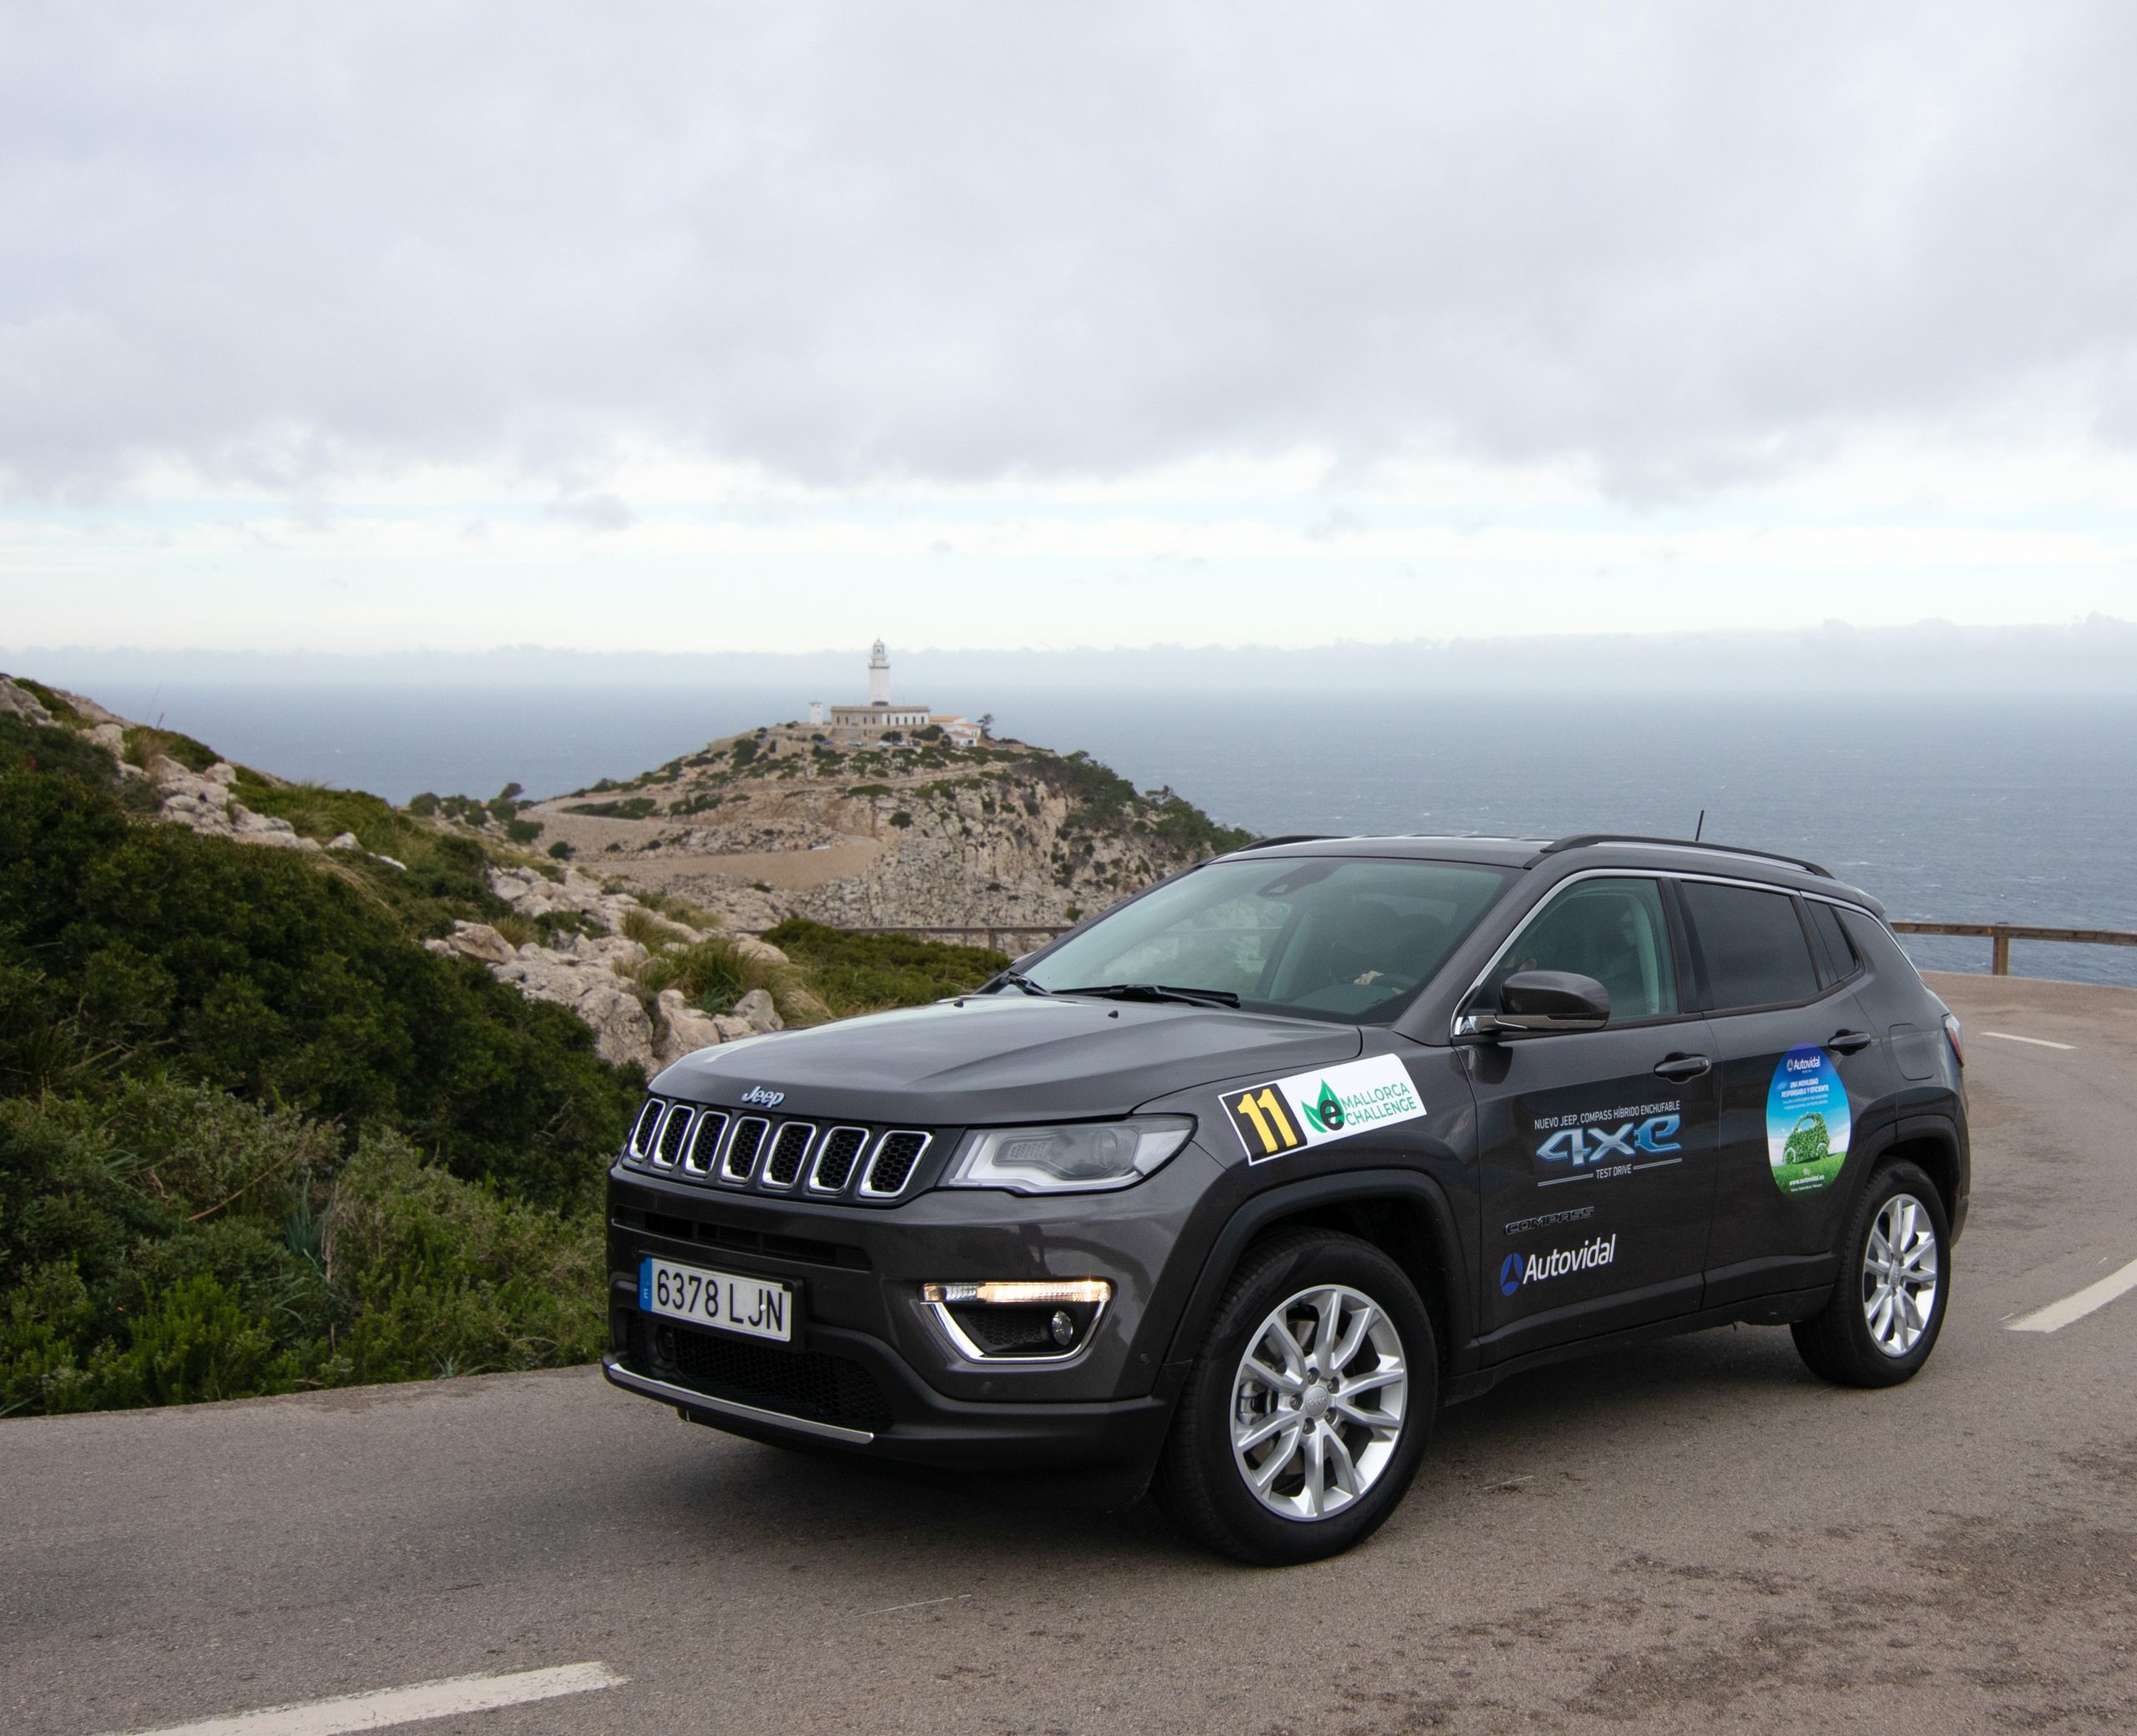 Mallorca Platinum eMallorca Challenge - Autovidal Jeep Vehículo sostenible 2